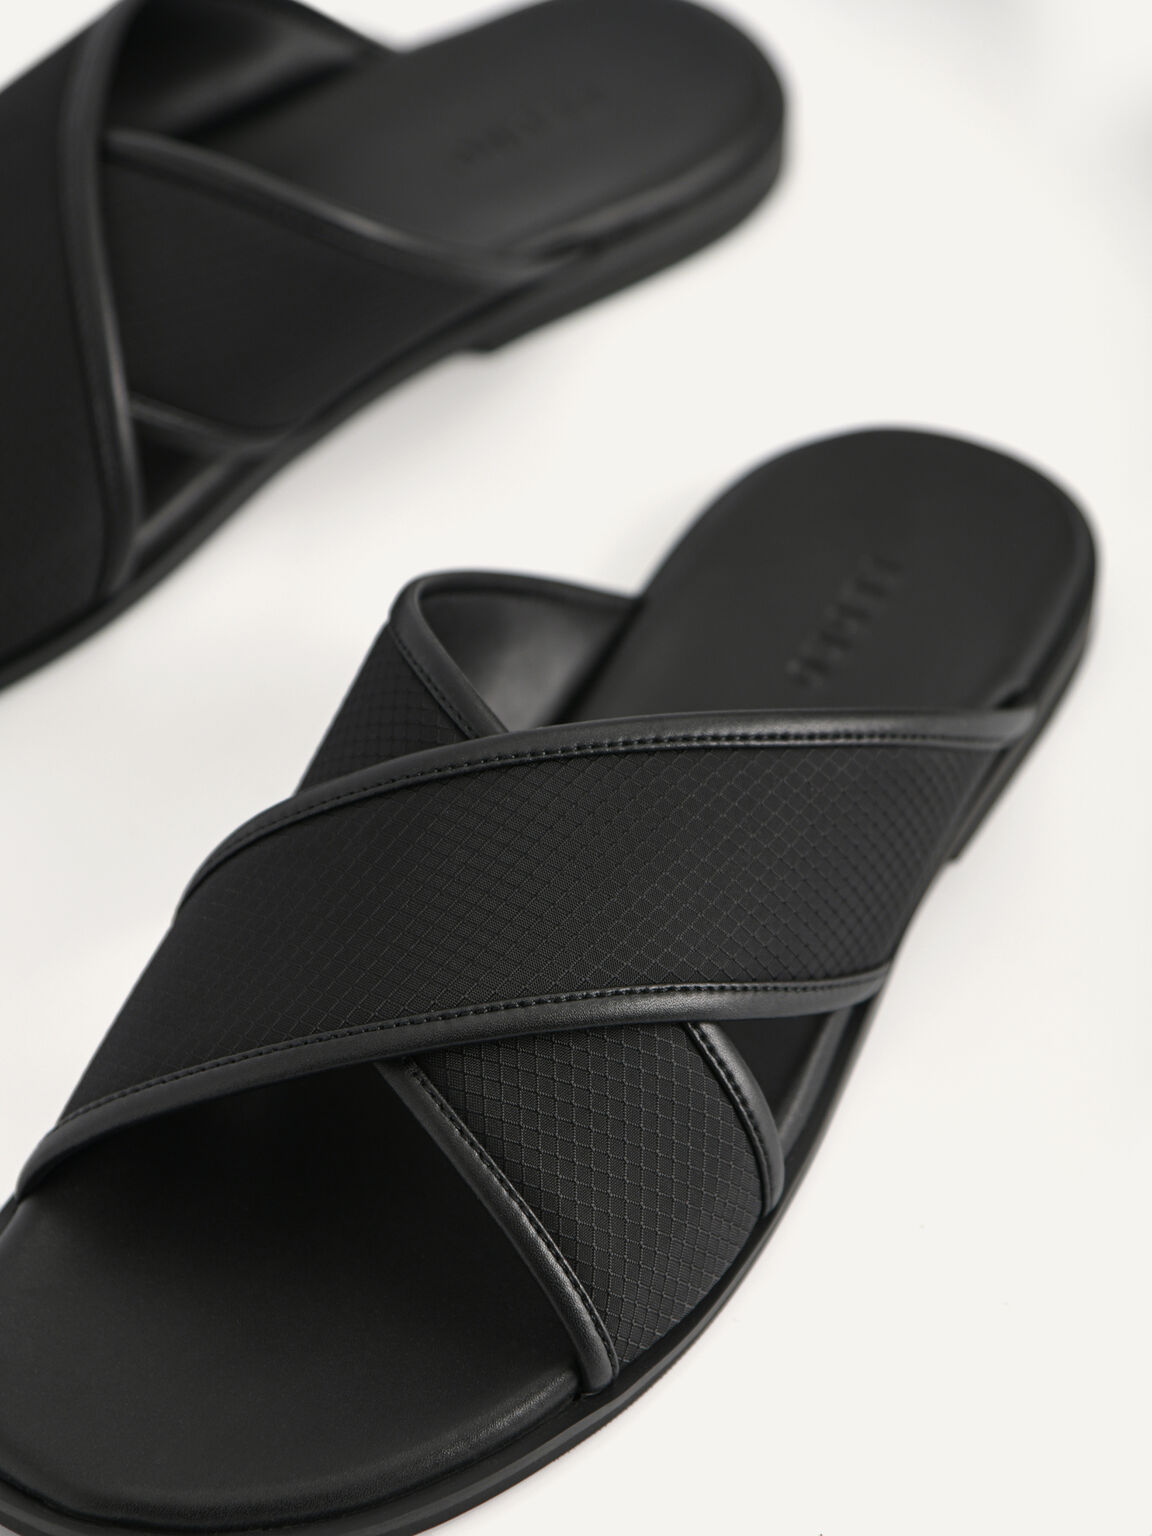 Criss-Cross Strap Sandals, Black, hi-res